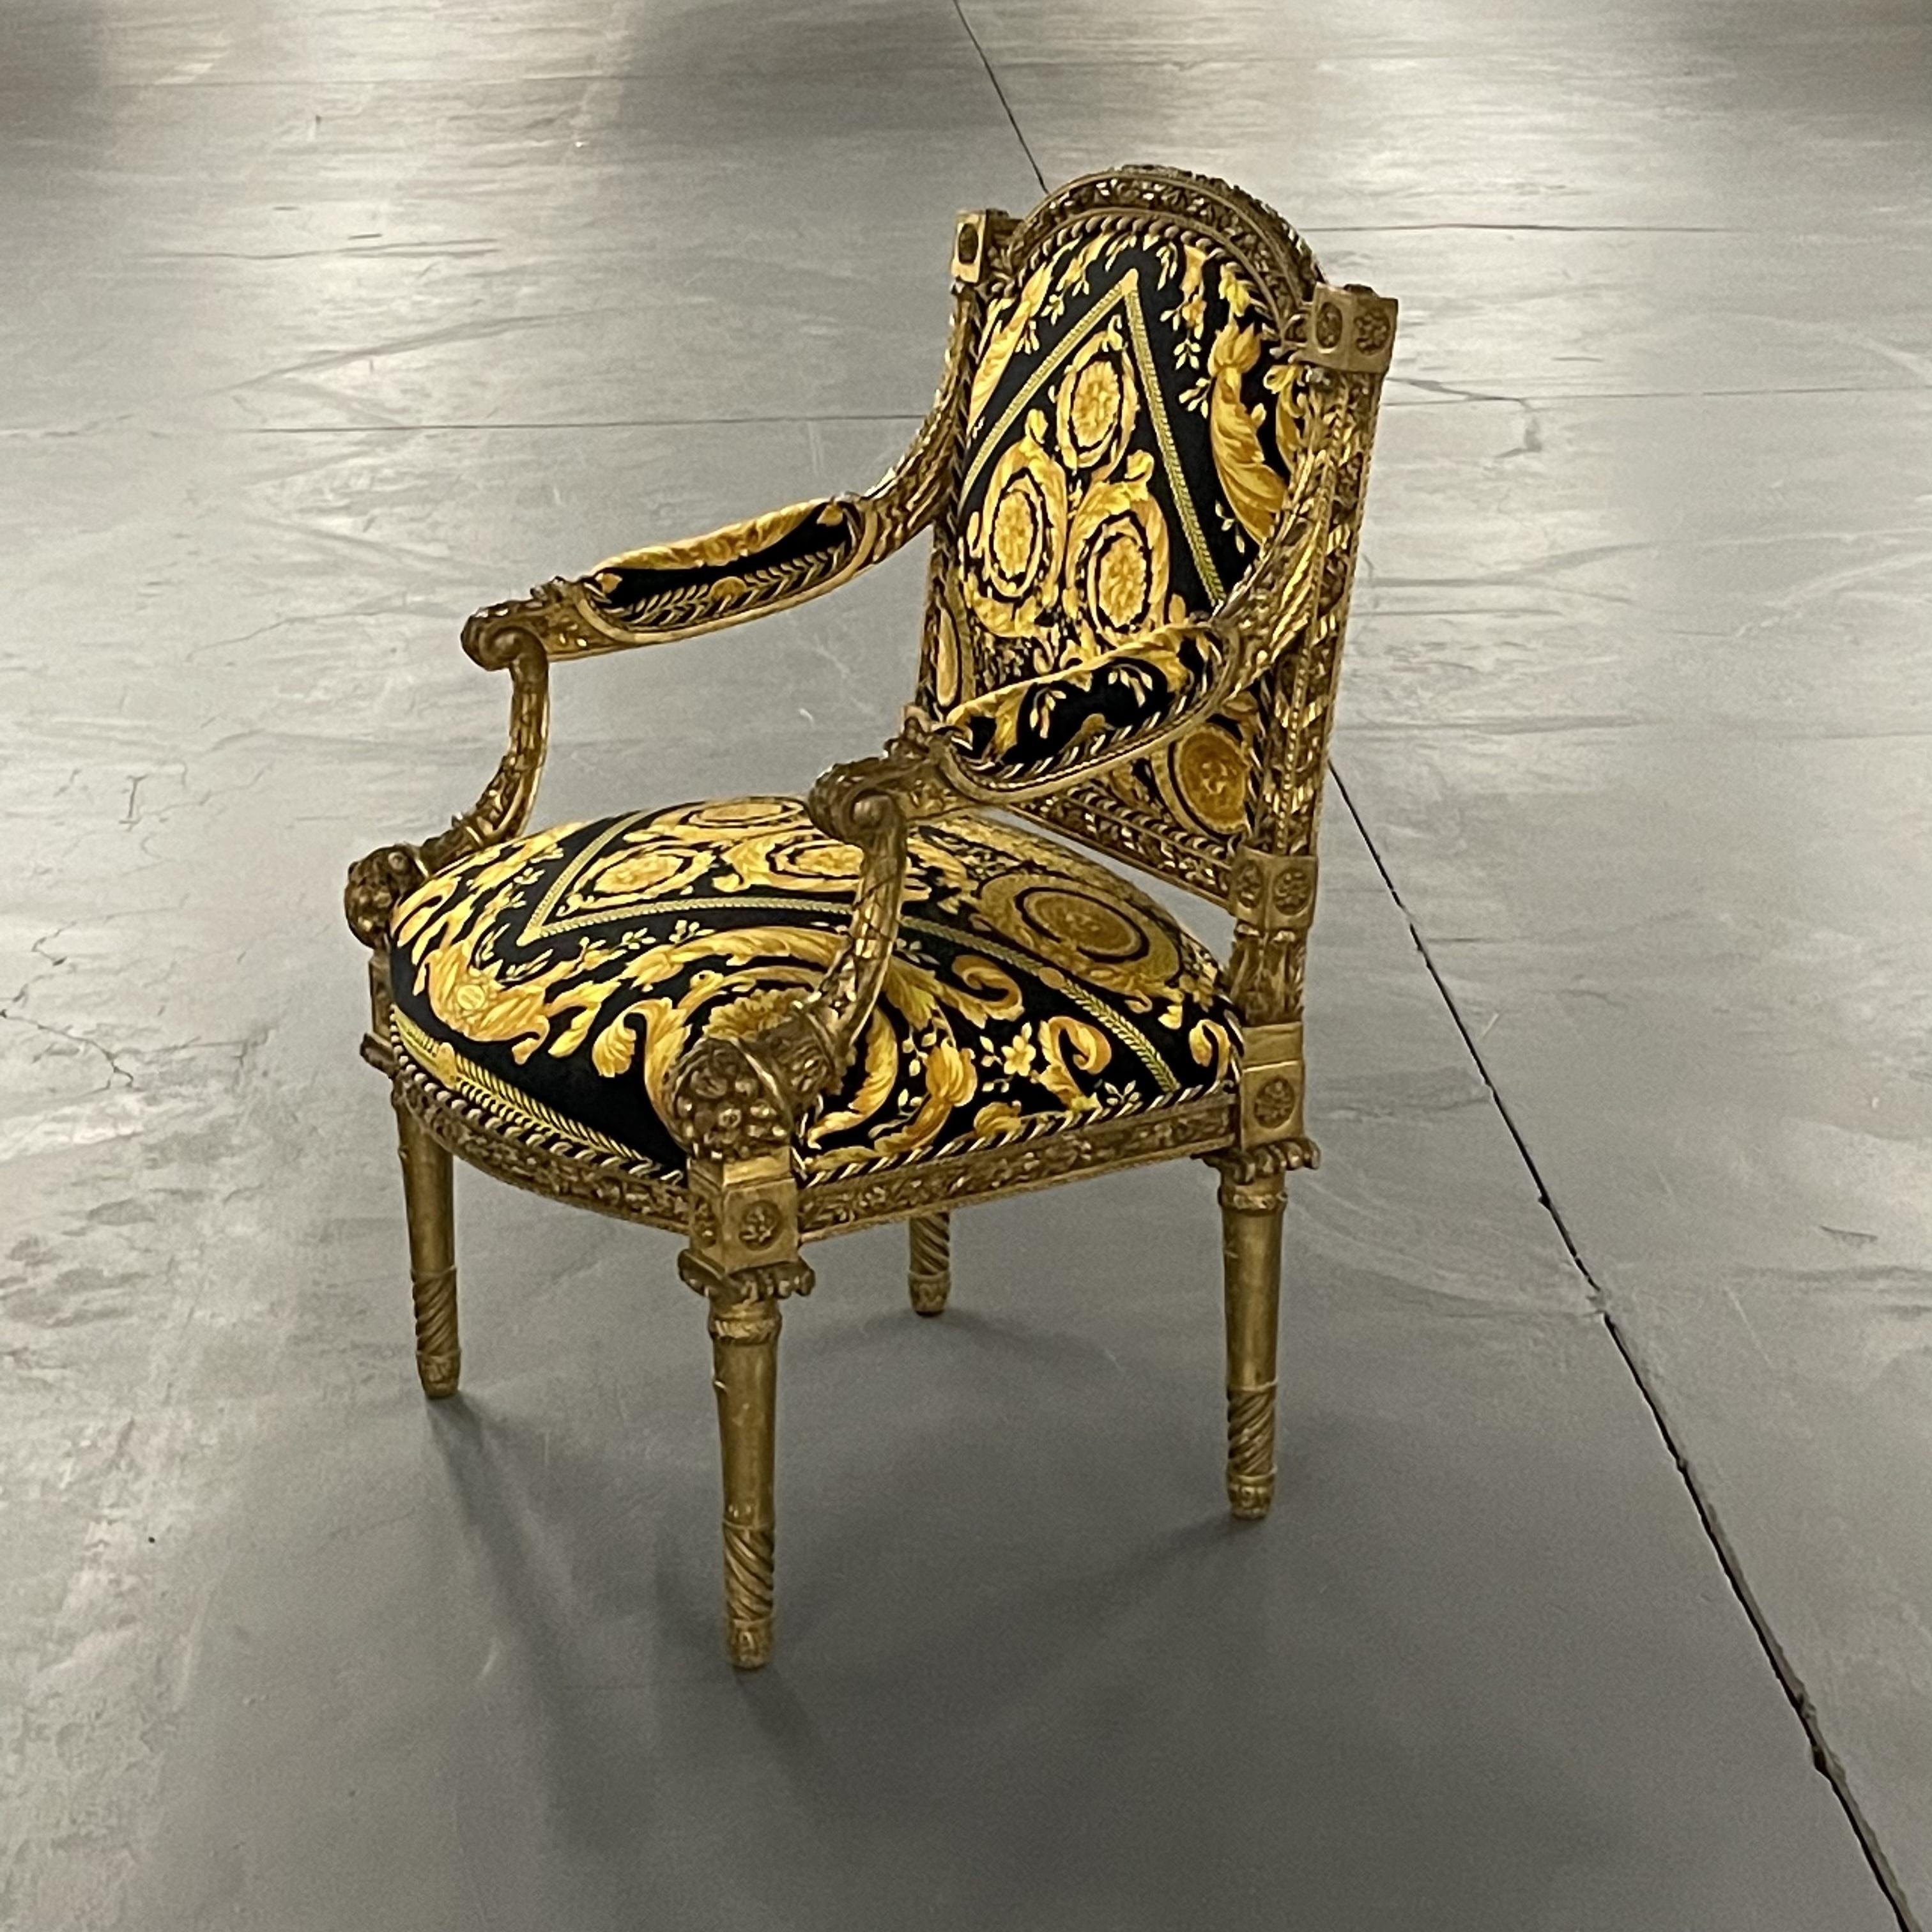 Paire de fauteuils de style Louis XVI du 19ème-20ème siècle finement sculptés en tissu Gianni Versace. Ces spectaculaires fauteuils anciens en noyer, uniques en leur genre, seraient à couper le souffle dans un bureau ou un salon. Les pieds anglés de